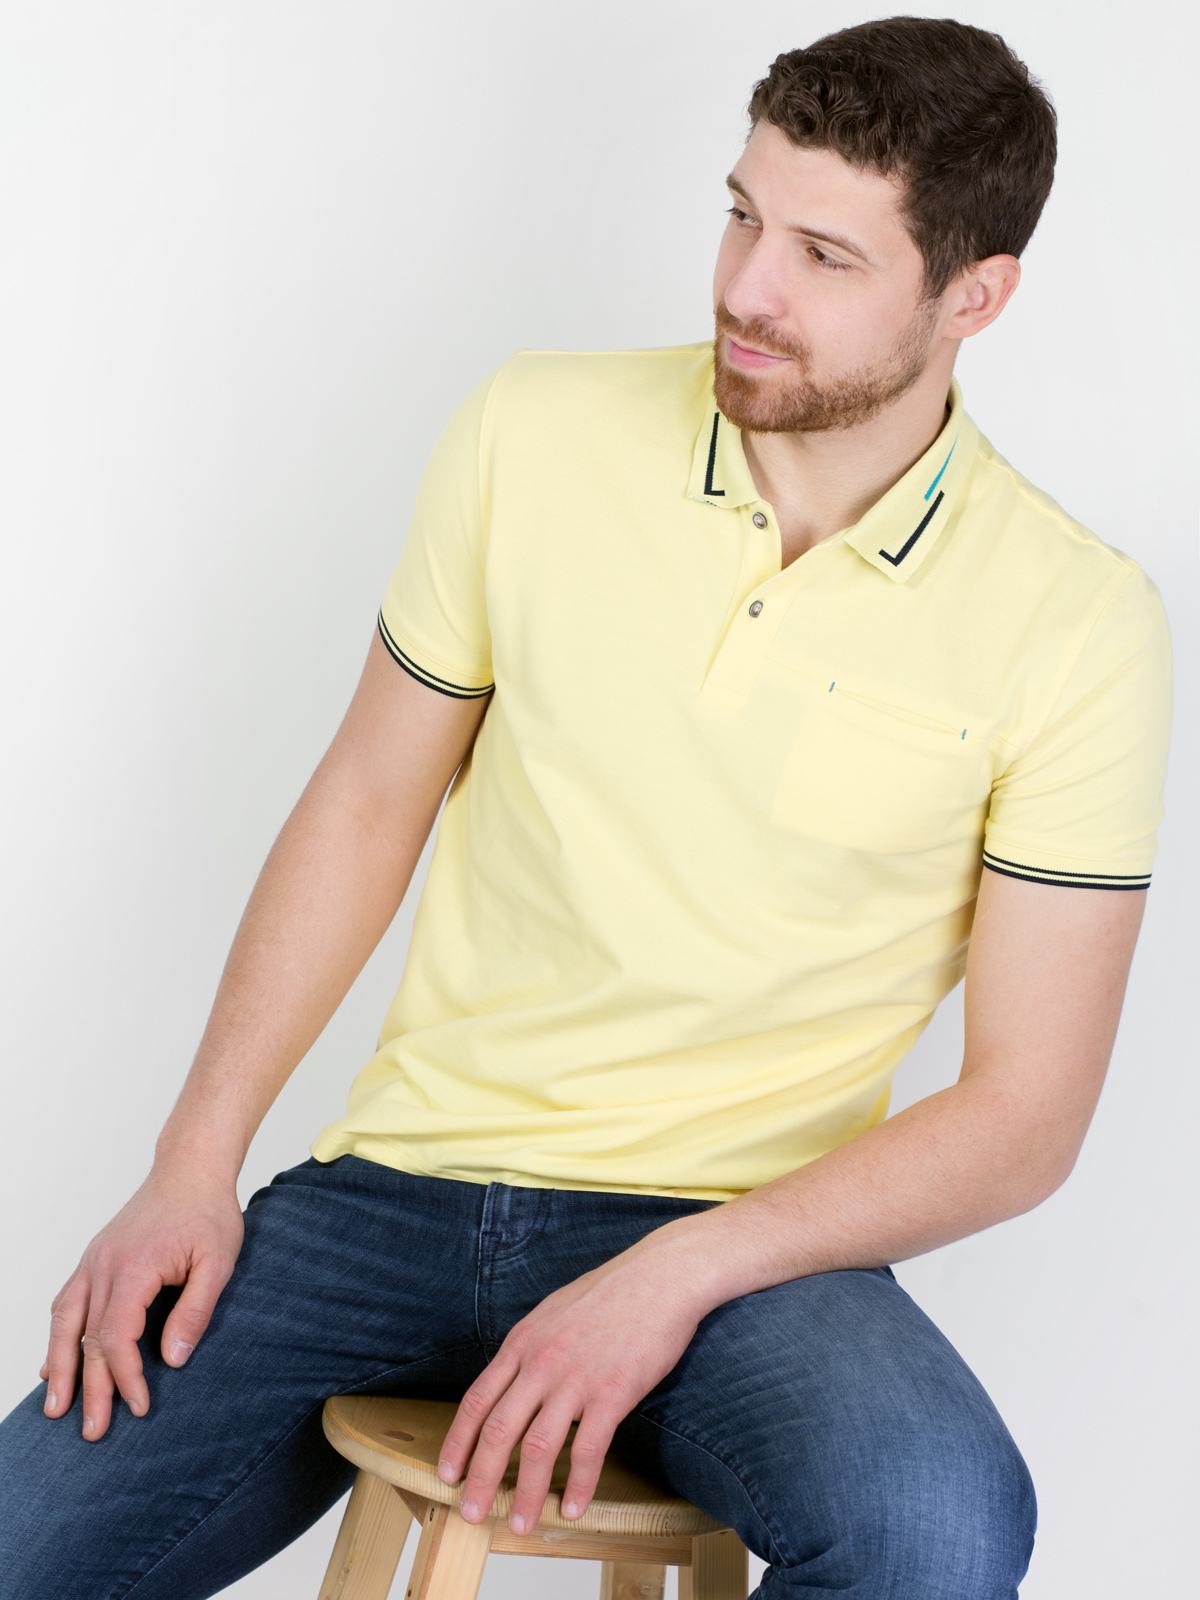 Ανοιχτό κίτρινη μπλούζα με χρωματιστά σ - 93405 € 21.93 img3